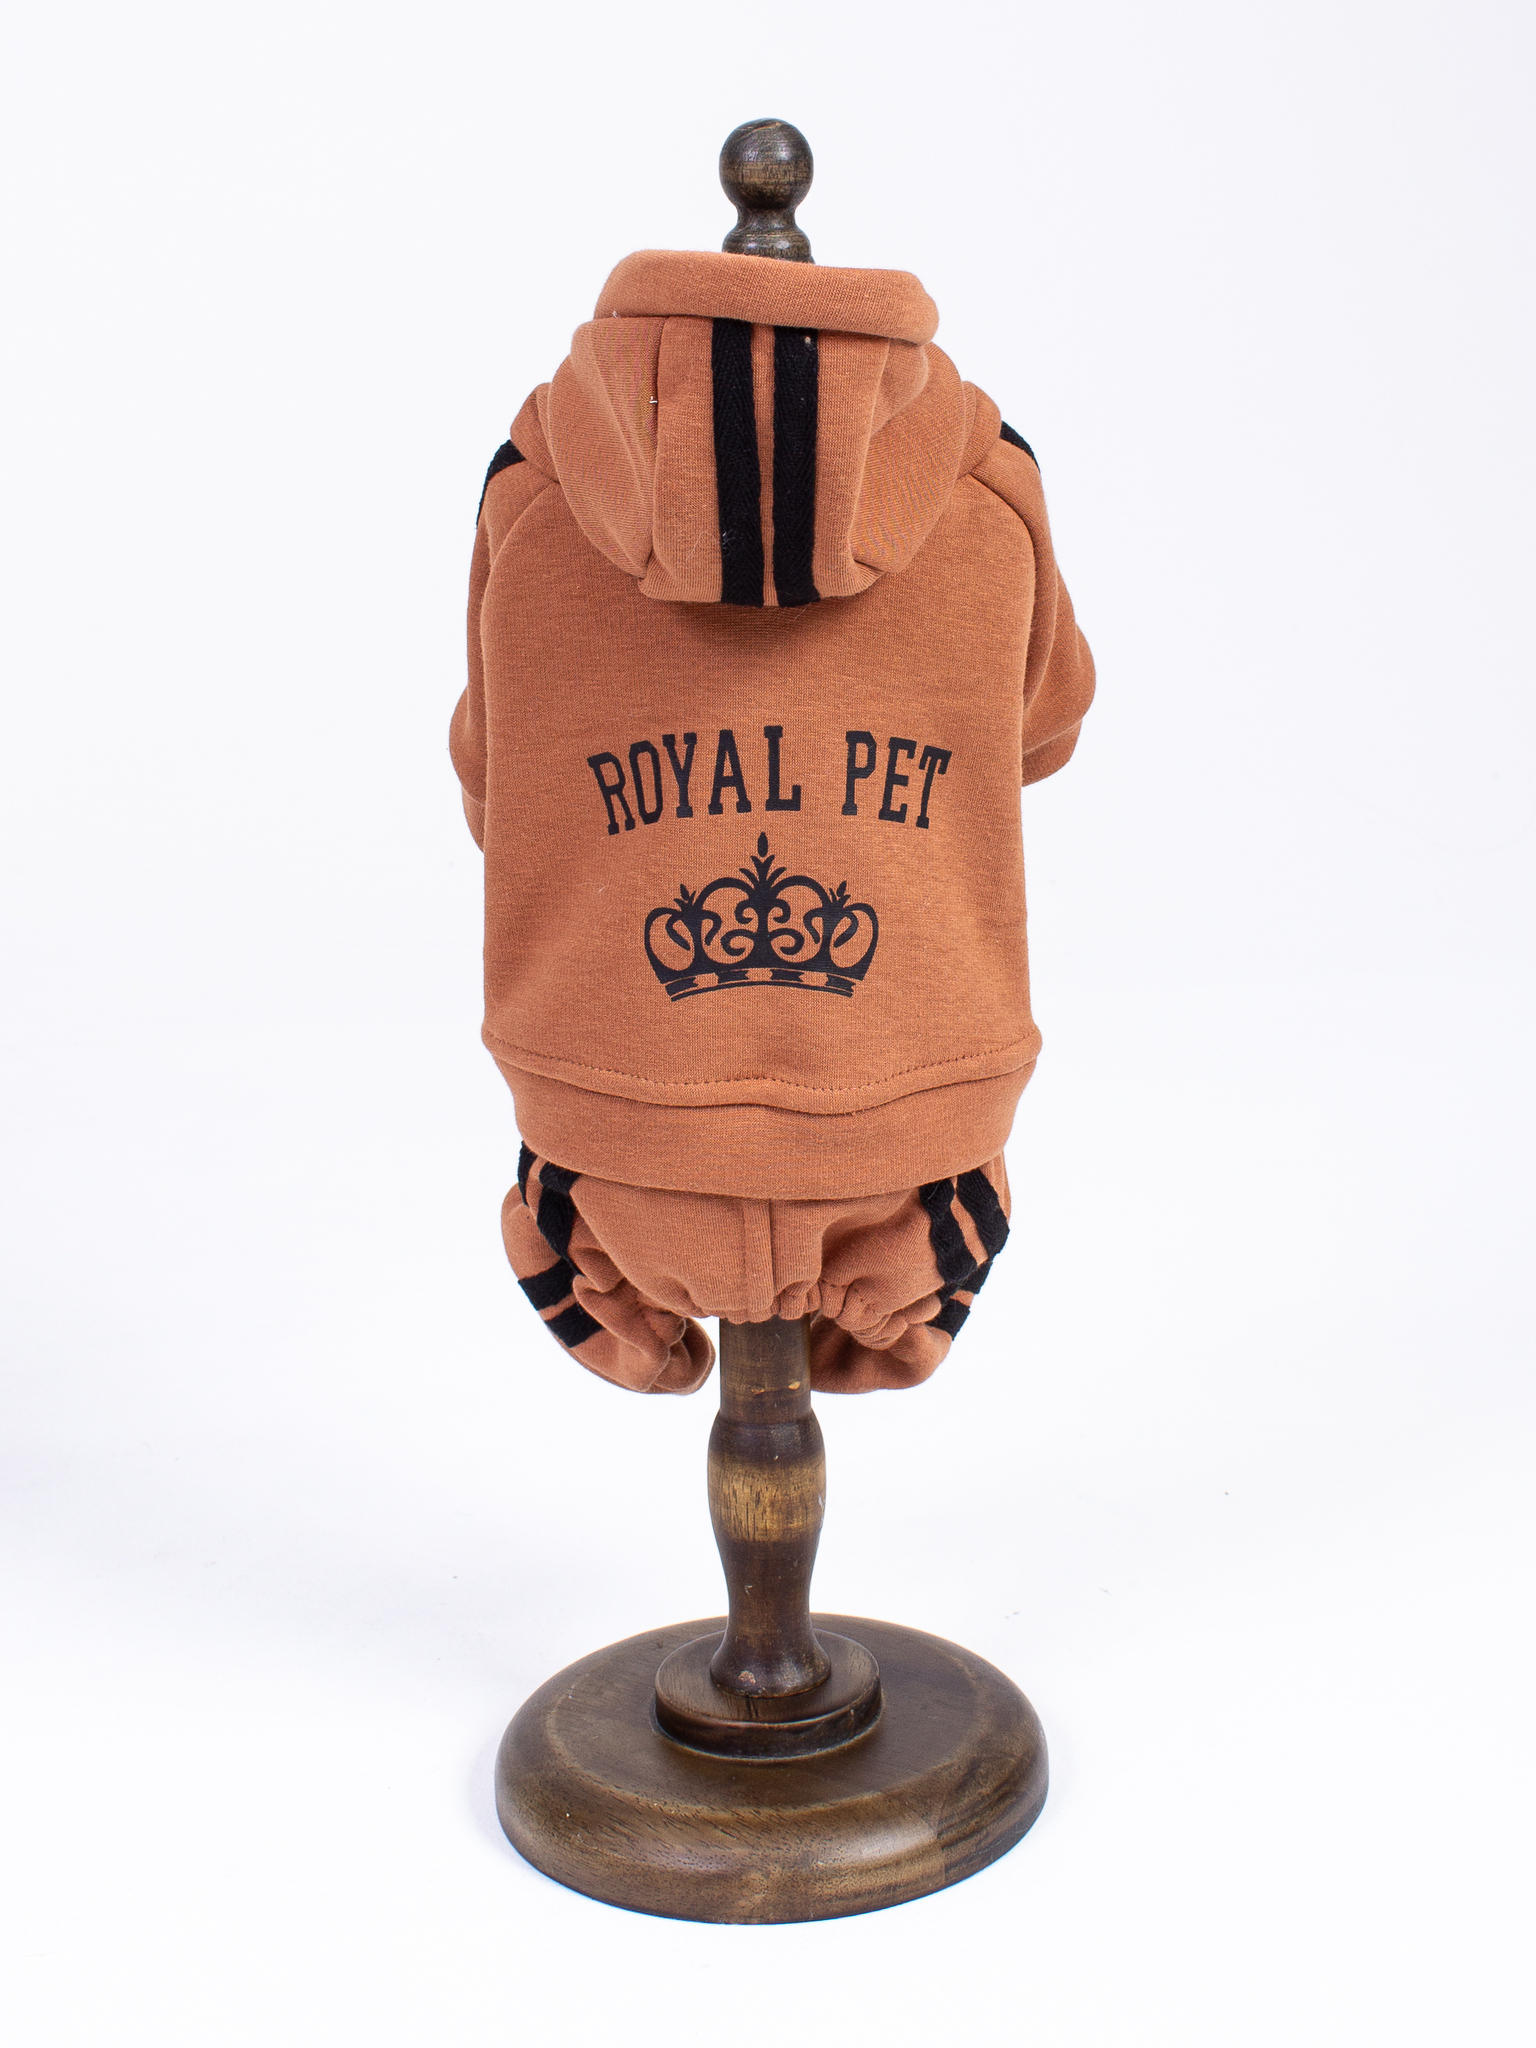 Royal pet. Royal Pet одежда для собак. Комбинезон для собак Royal Pet. Худи Роял ПЭТ капучино.